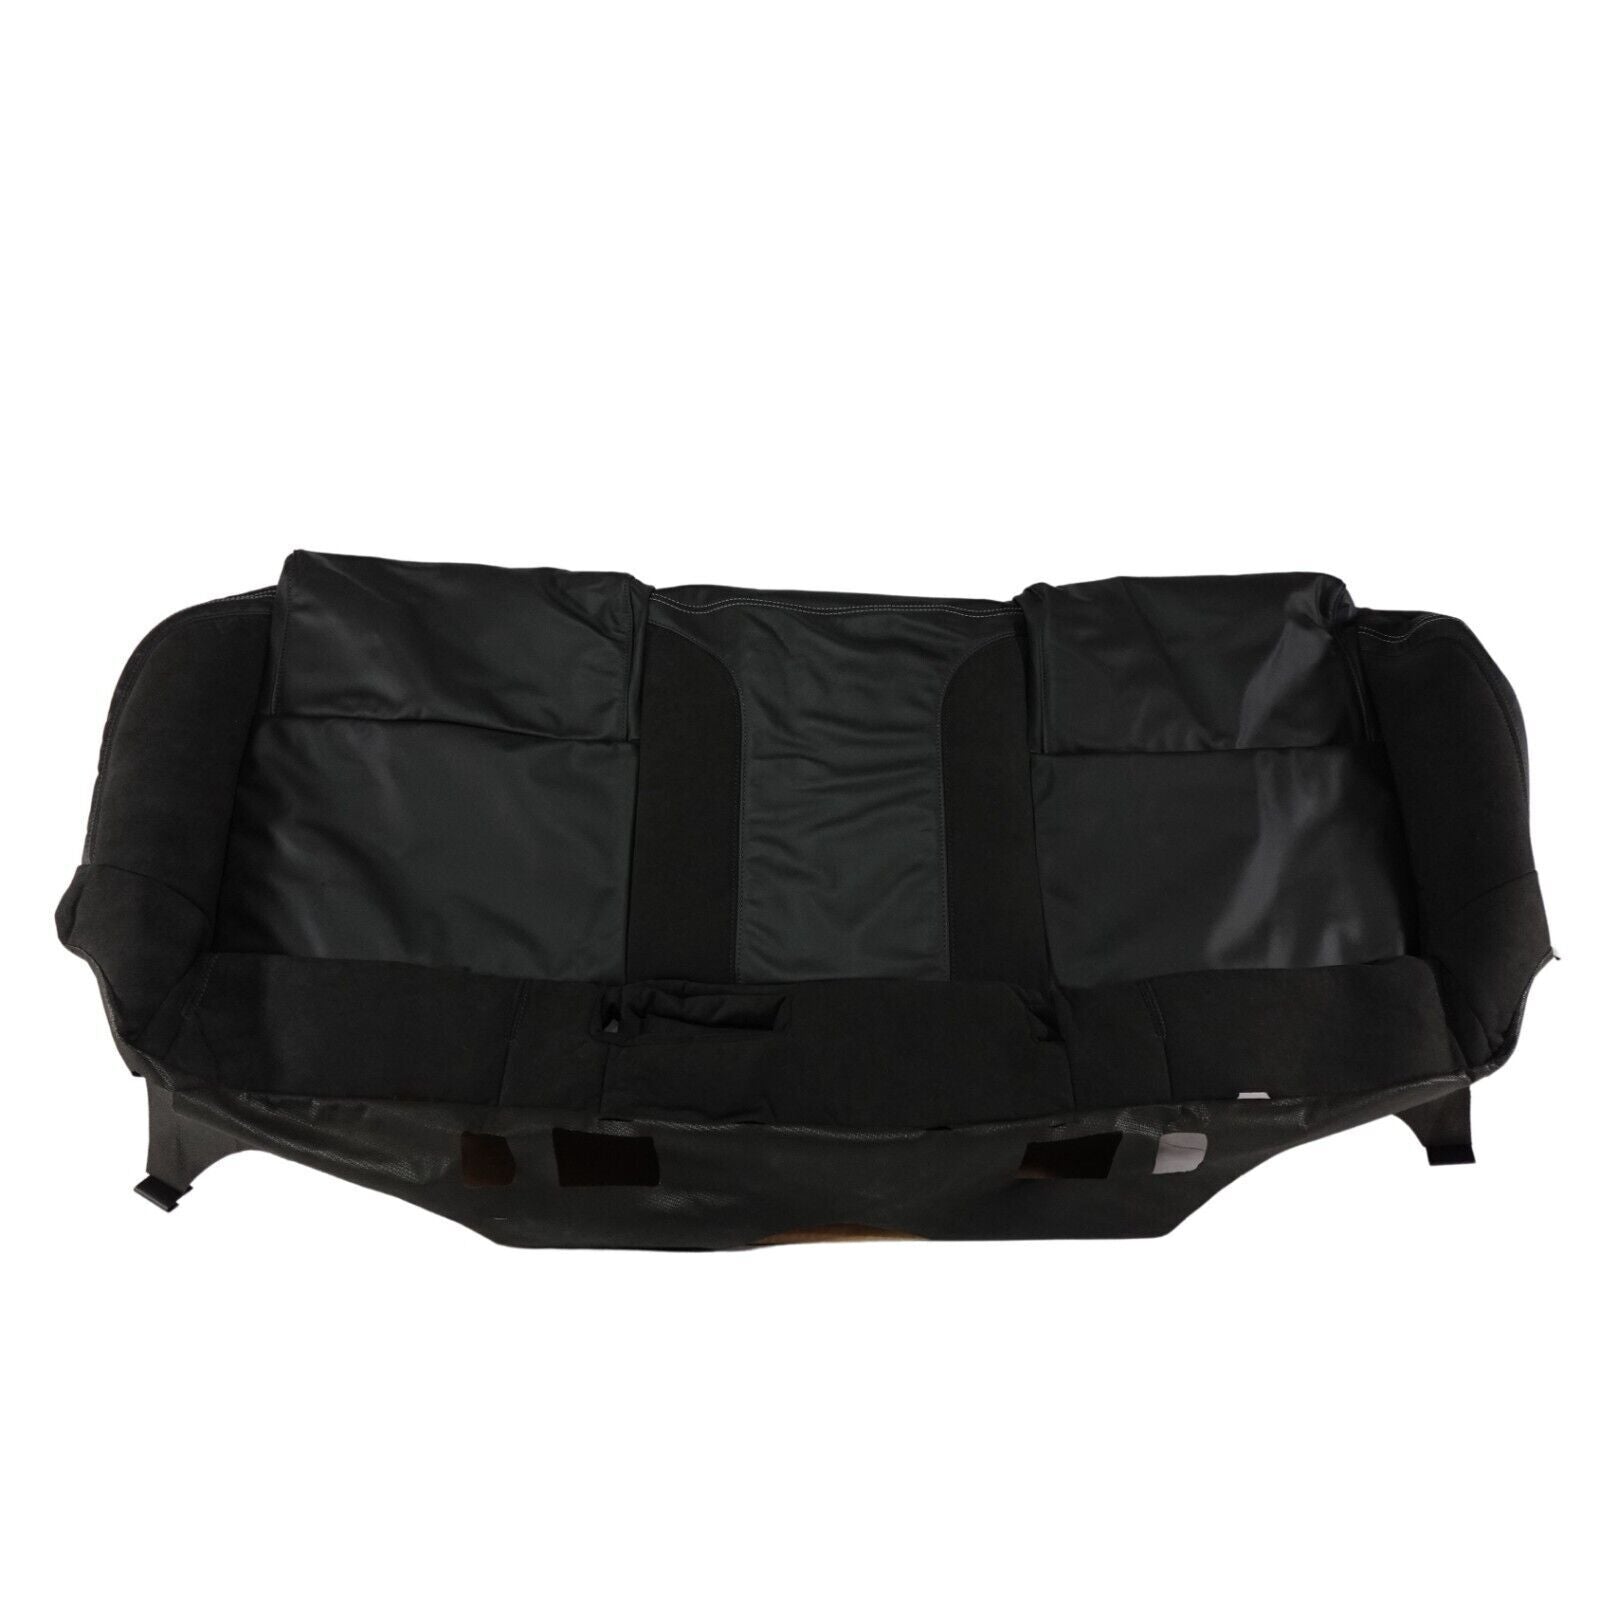 HSV VF CLUBSPORT LSA REAR SEAT BASE COVER JET BLACK MY16 # HSV-K06-147703JB